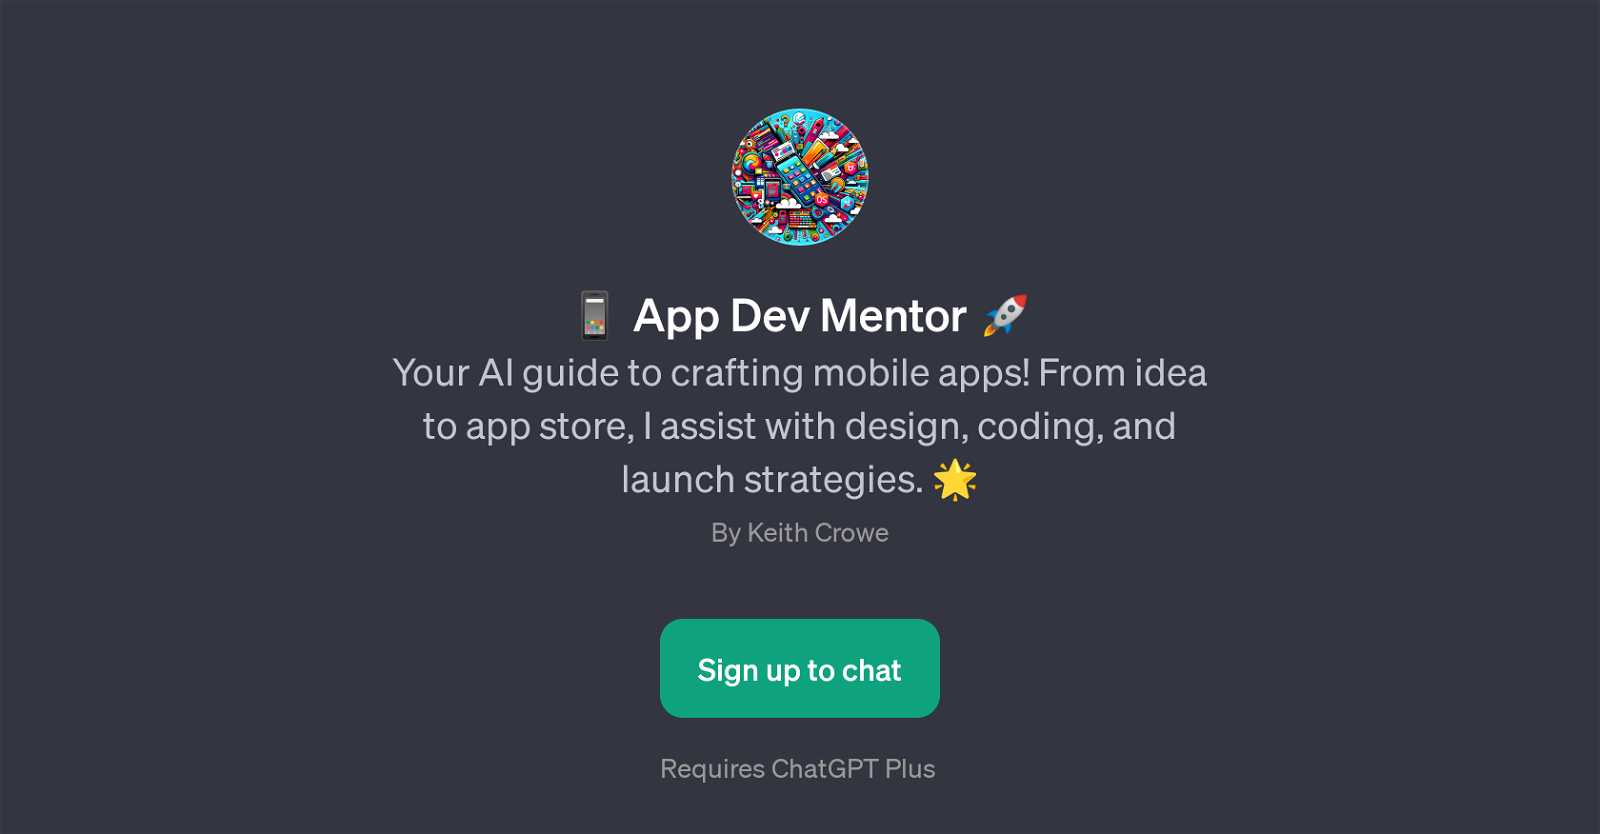 App Dev Mentor website